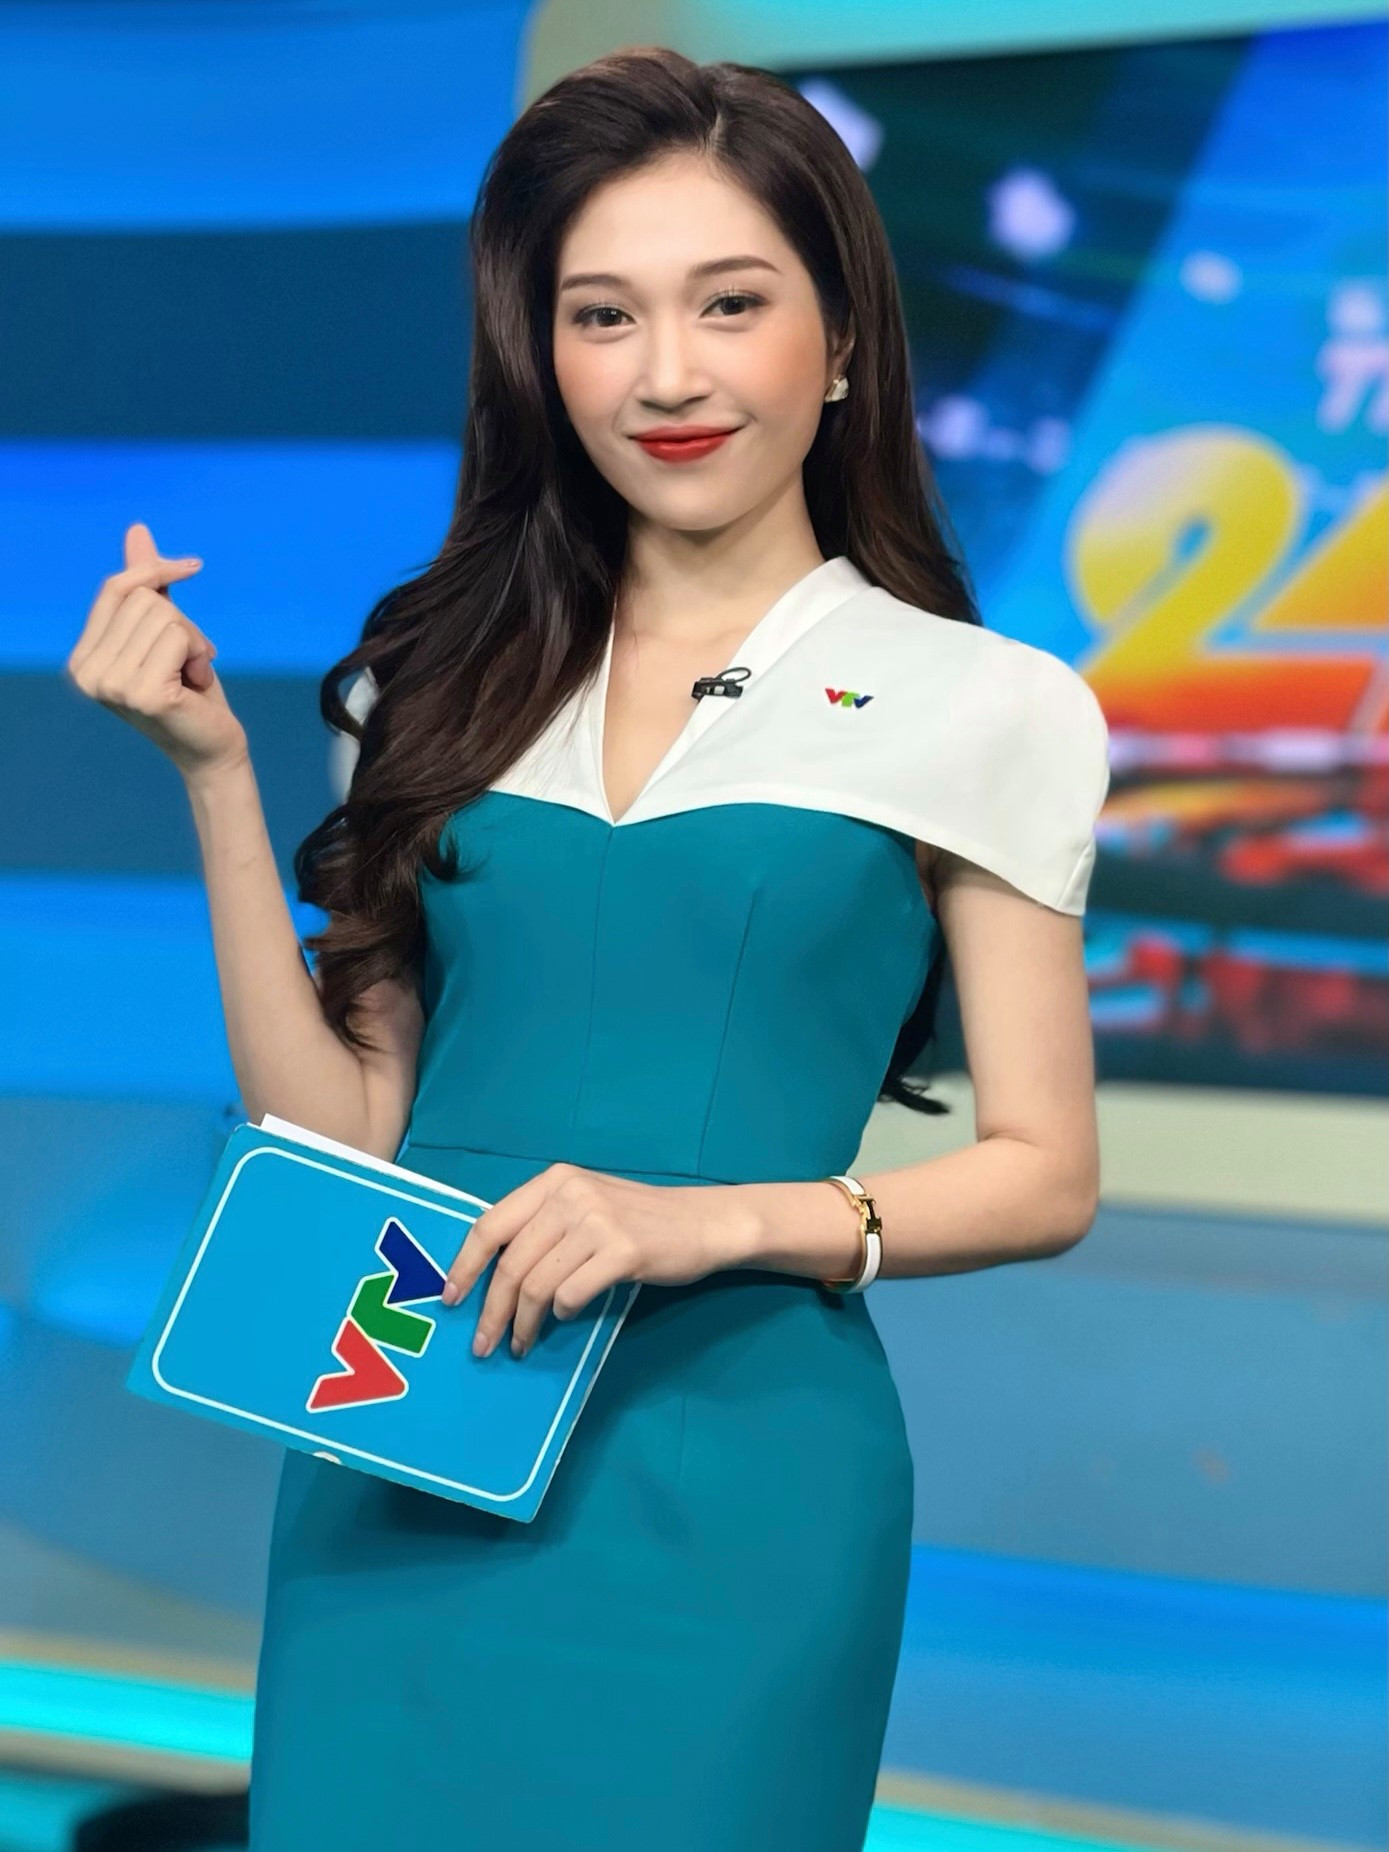 MC Ngọc Anh dẫn World Cup VTV: Tôi không thích yêu người cùng nghề